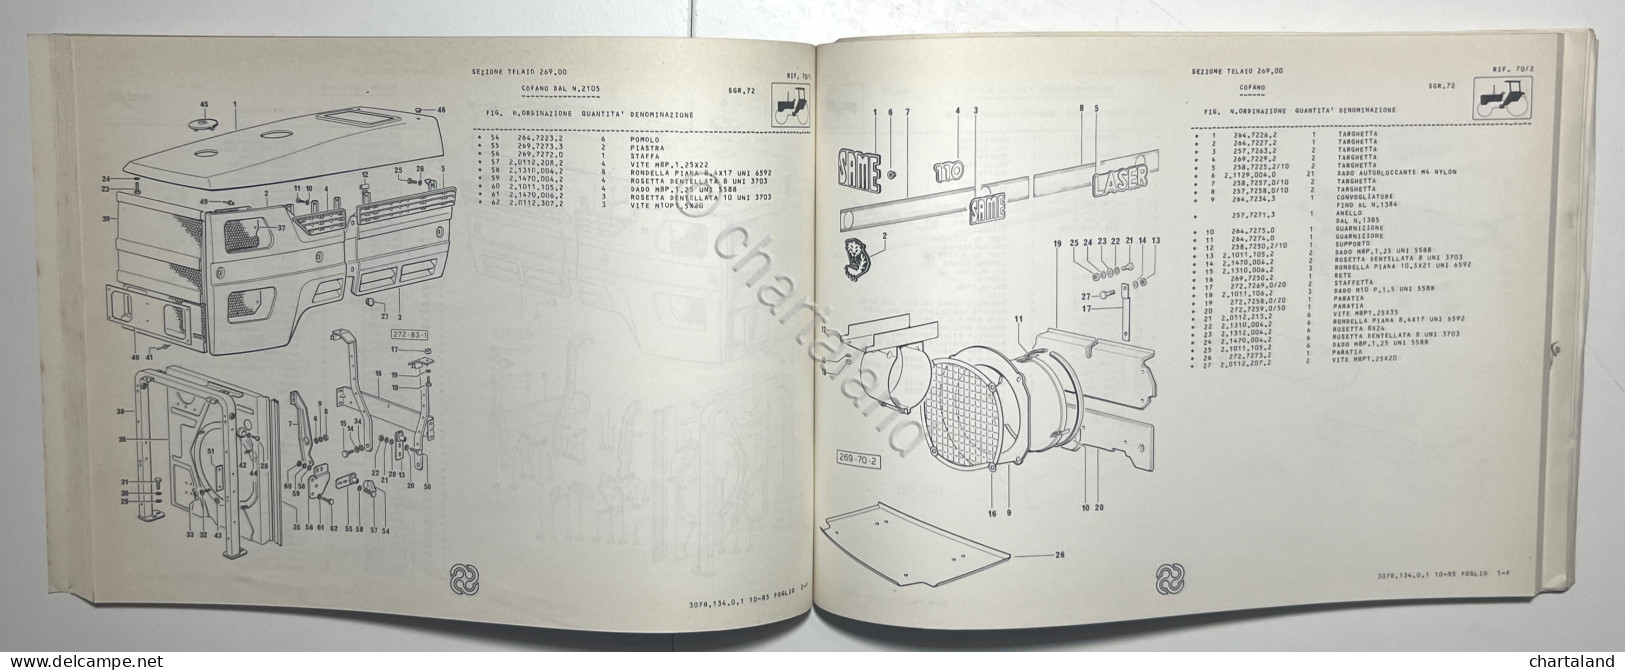 Catalogo Parti Di Ricambio Originali SAME Trattori - Laser 110 -  Ed. 1989 - Other & Unclassified